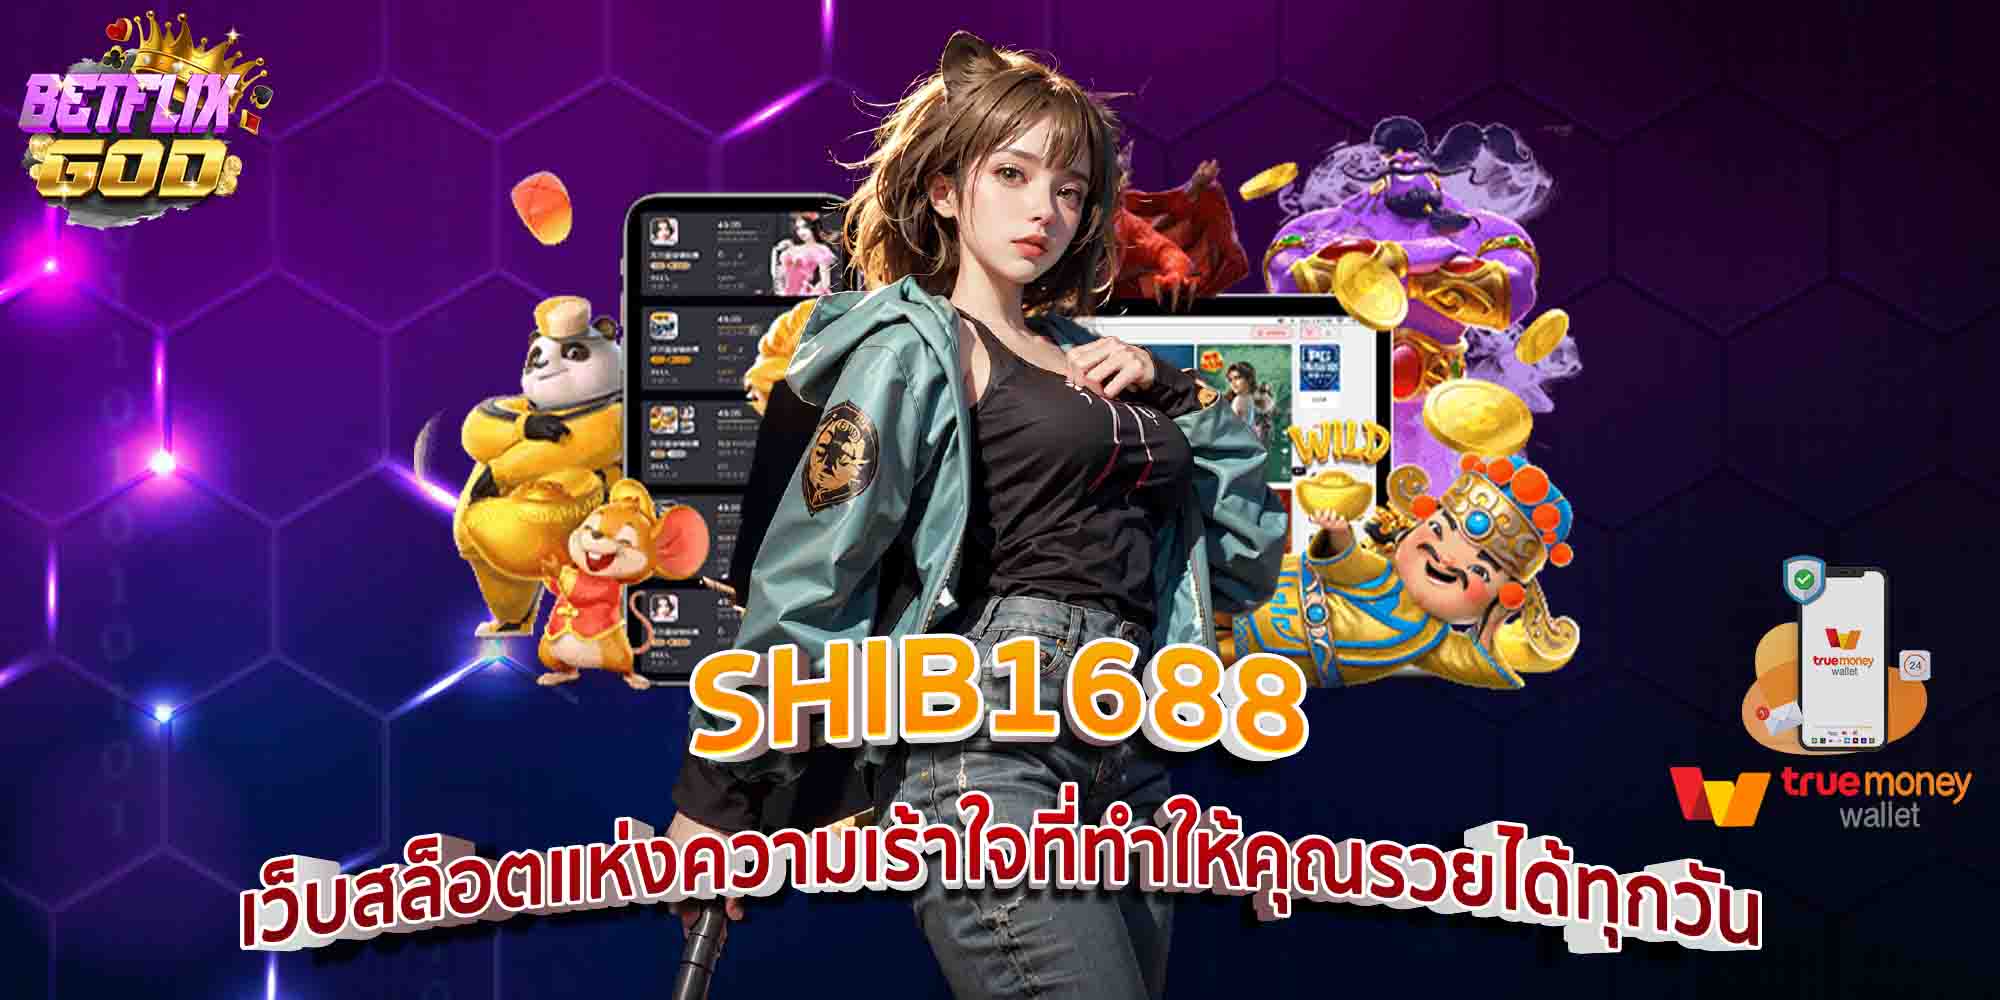 SHIB1688 เว็บสล็อตแห่งความเร้าใจที่ทำให้คุณรวยได้ทุกวัน